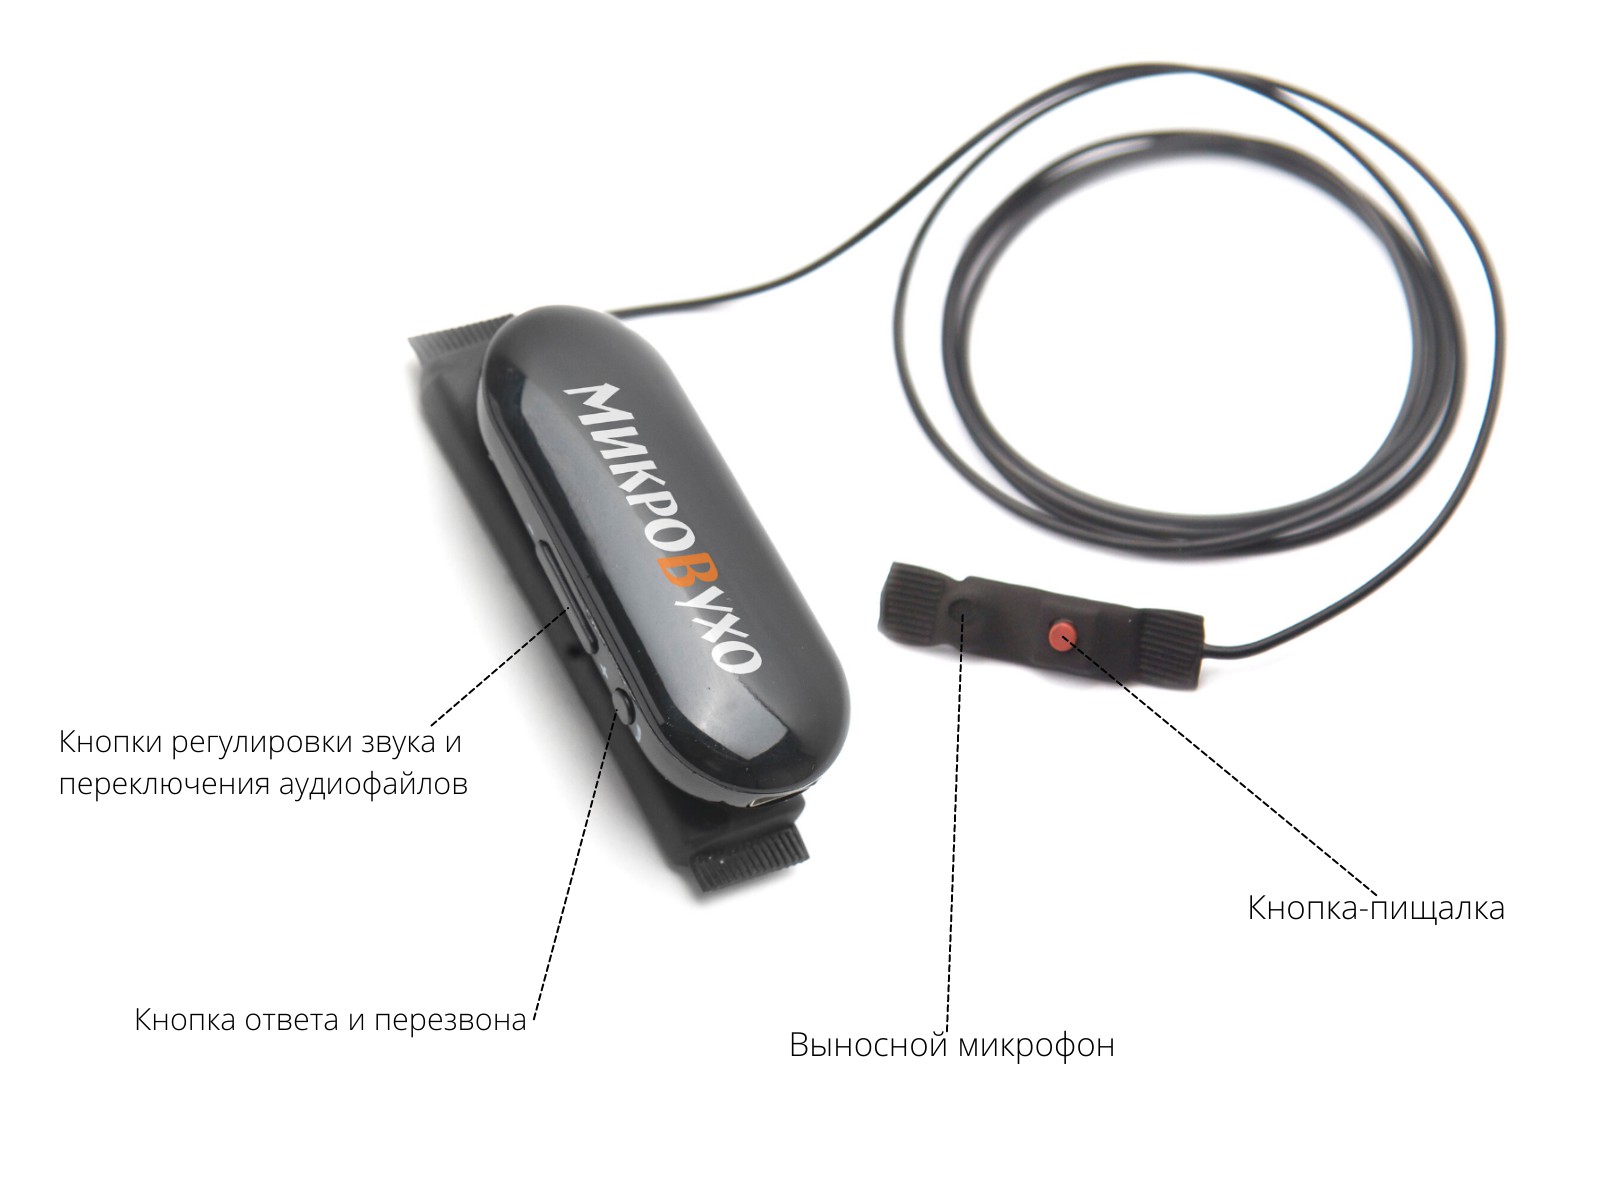 Гарнитура Bluetooth Box PRO Plus c капсульным микронаушником К5 4 мм